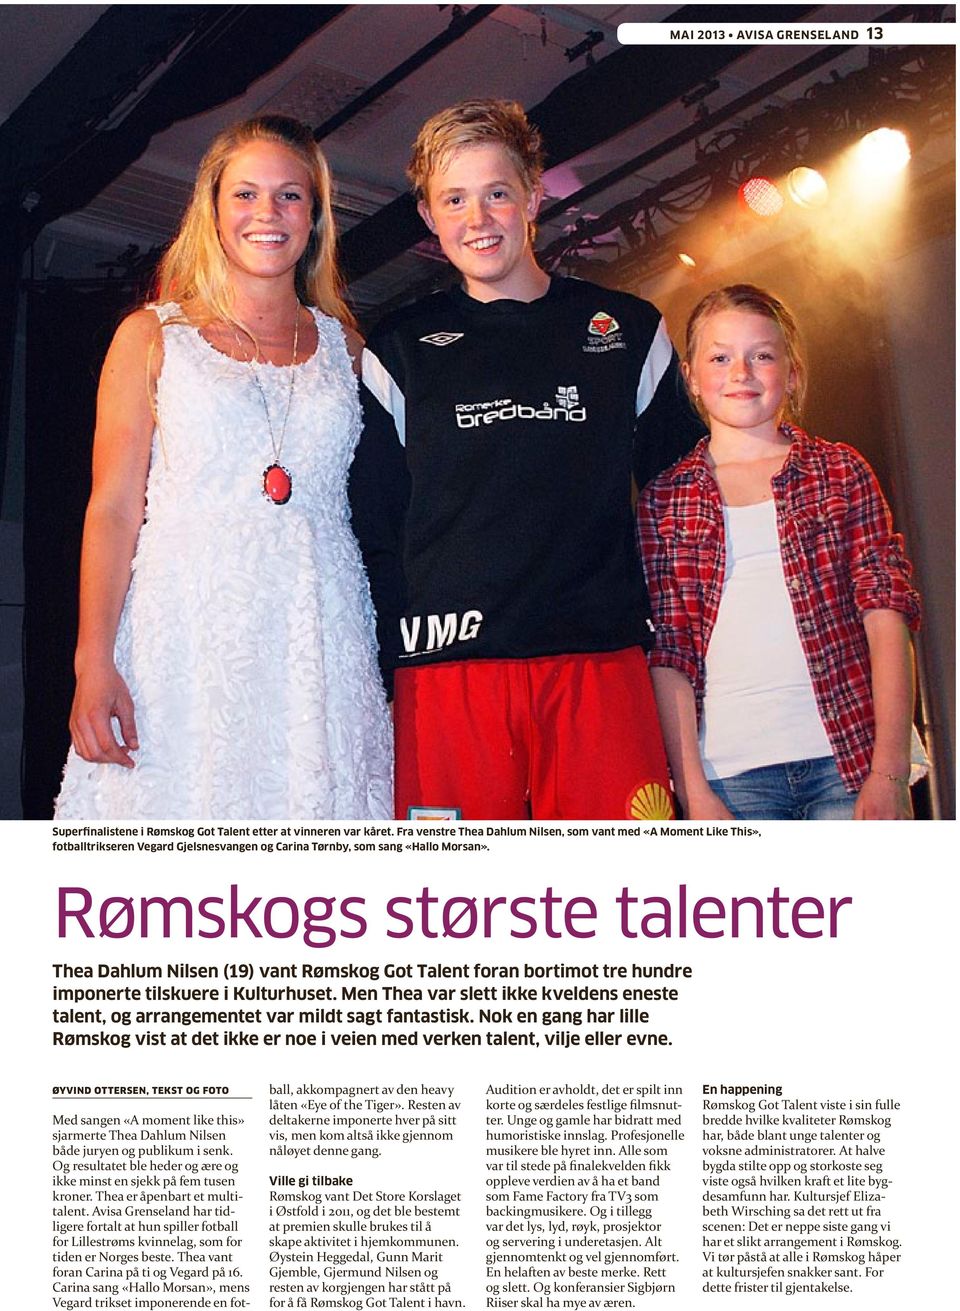 Rømskogs største talenter Thea Dahlum Nilsen (19) vant Rømskog Got Talent foran bortimot tre hundre imponerte tilskuere i Kulturhuset.